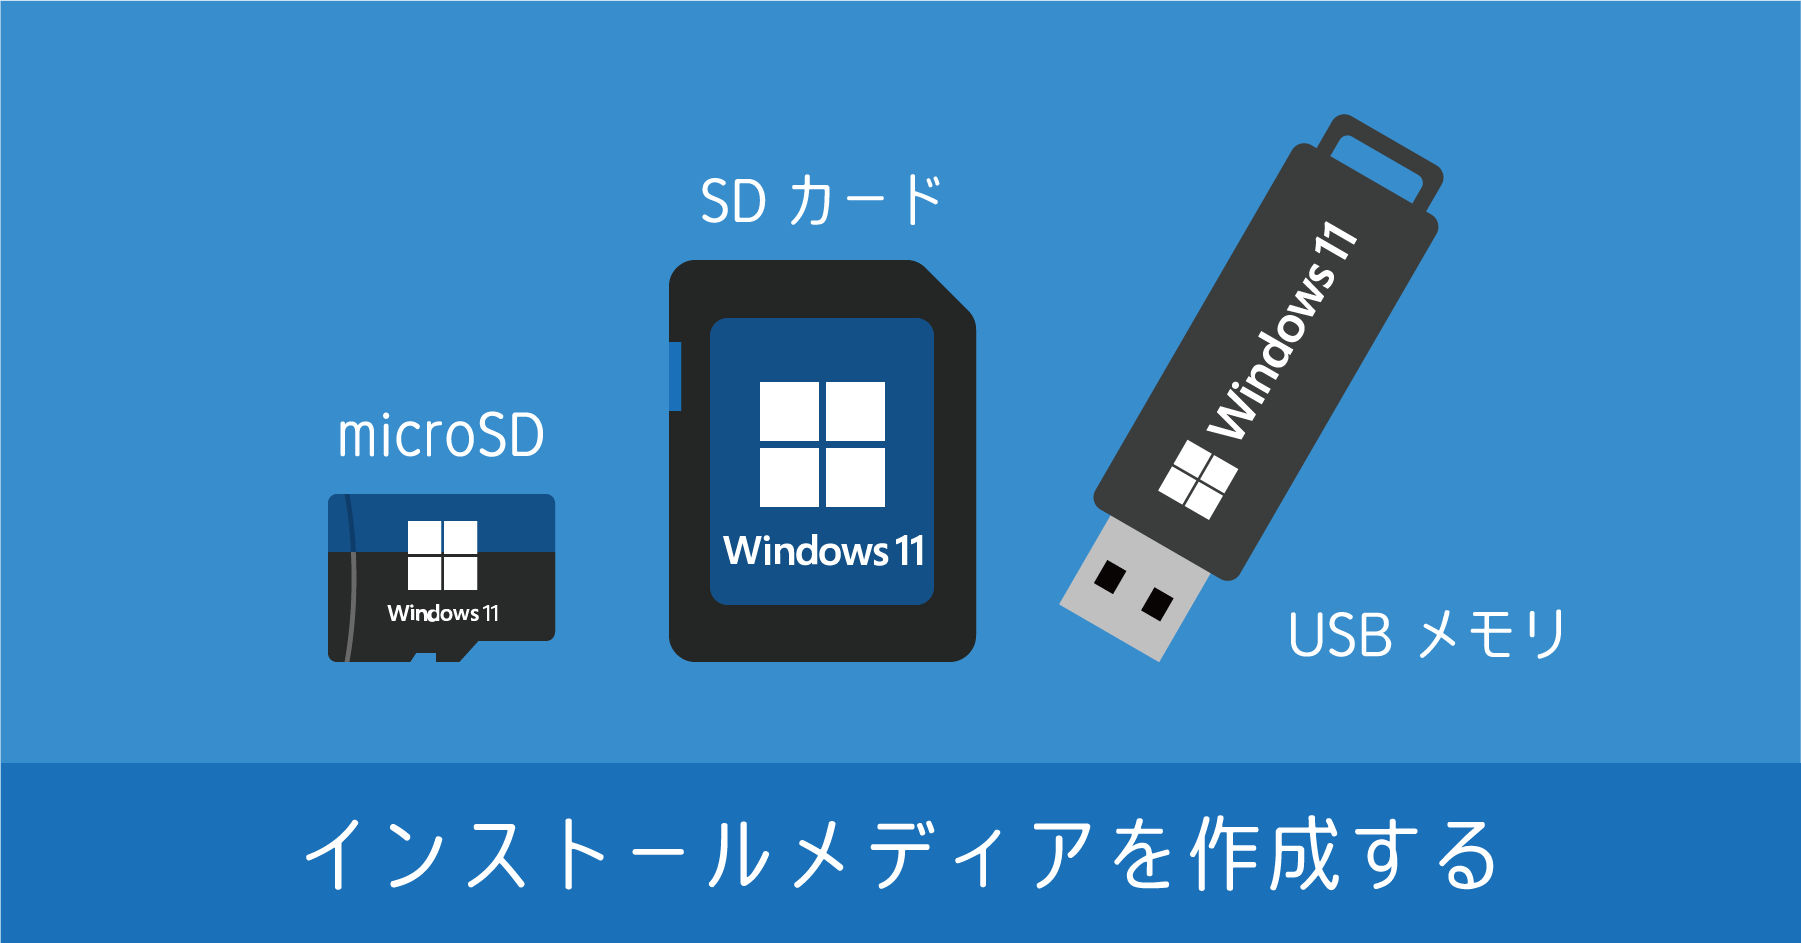 Windows 11 インストール用メディアの作成手順。USB メモリや micro SD カードが利用できる